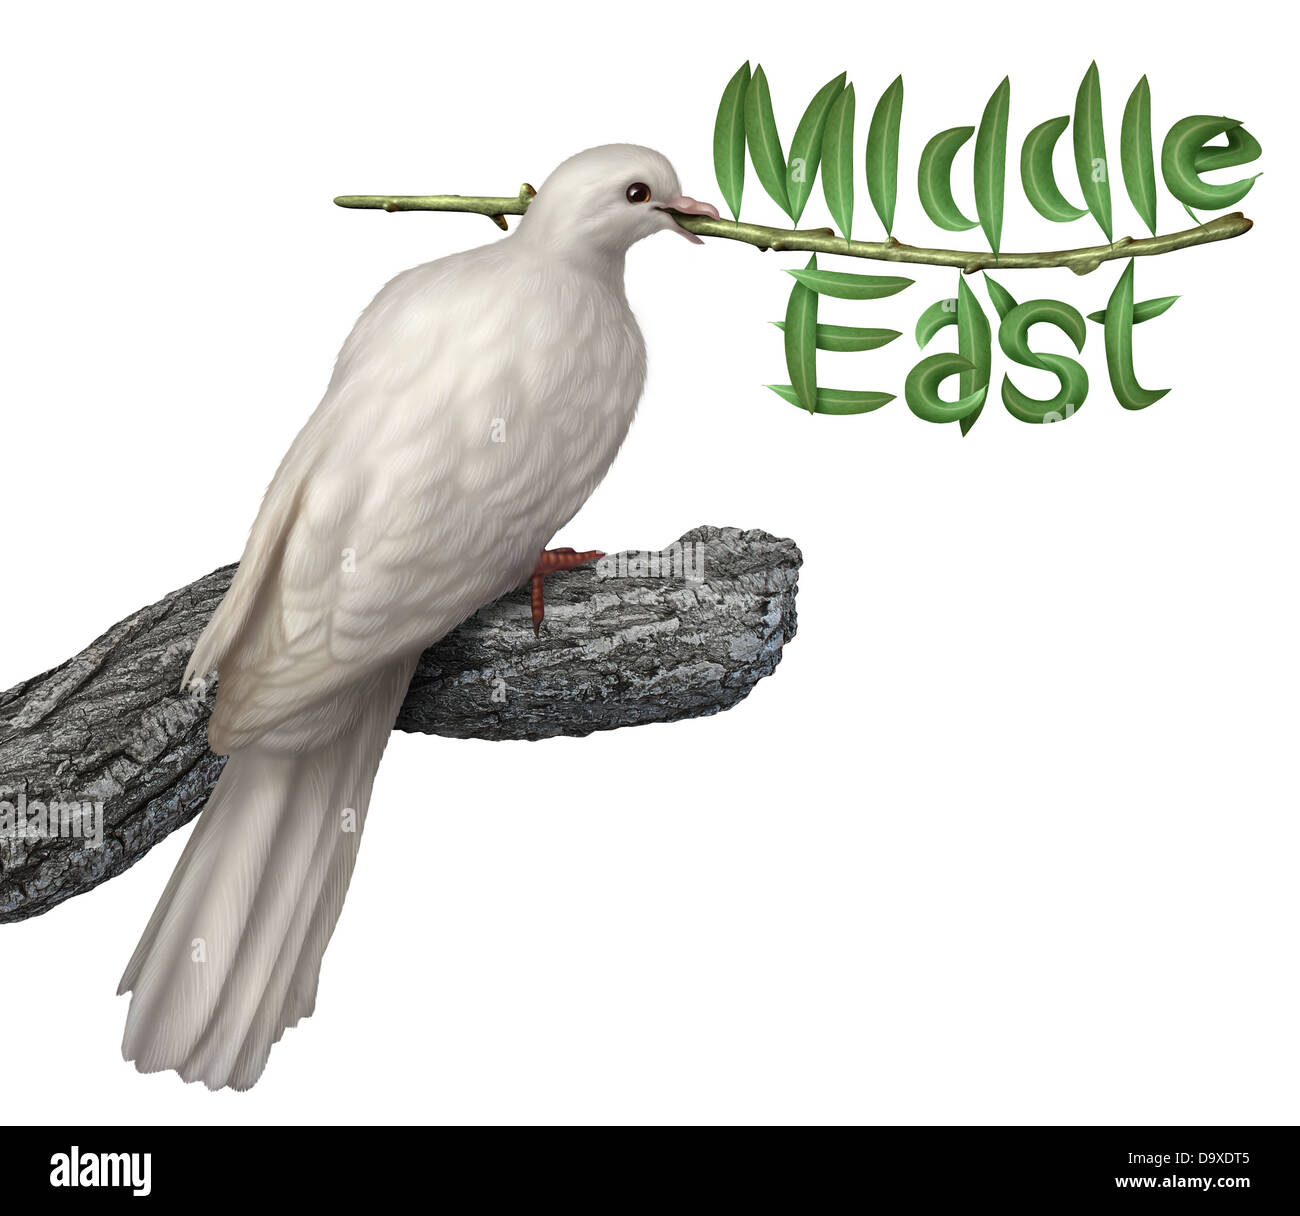 Medio Oriente piano di pace e la diplomazia concetto con una colomba bianca tenendo un ramo di olivo con le foglie in forma di parola Foto Stock